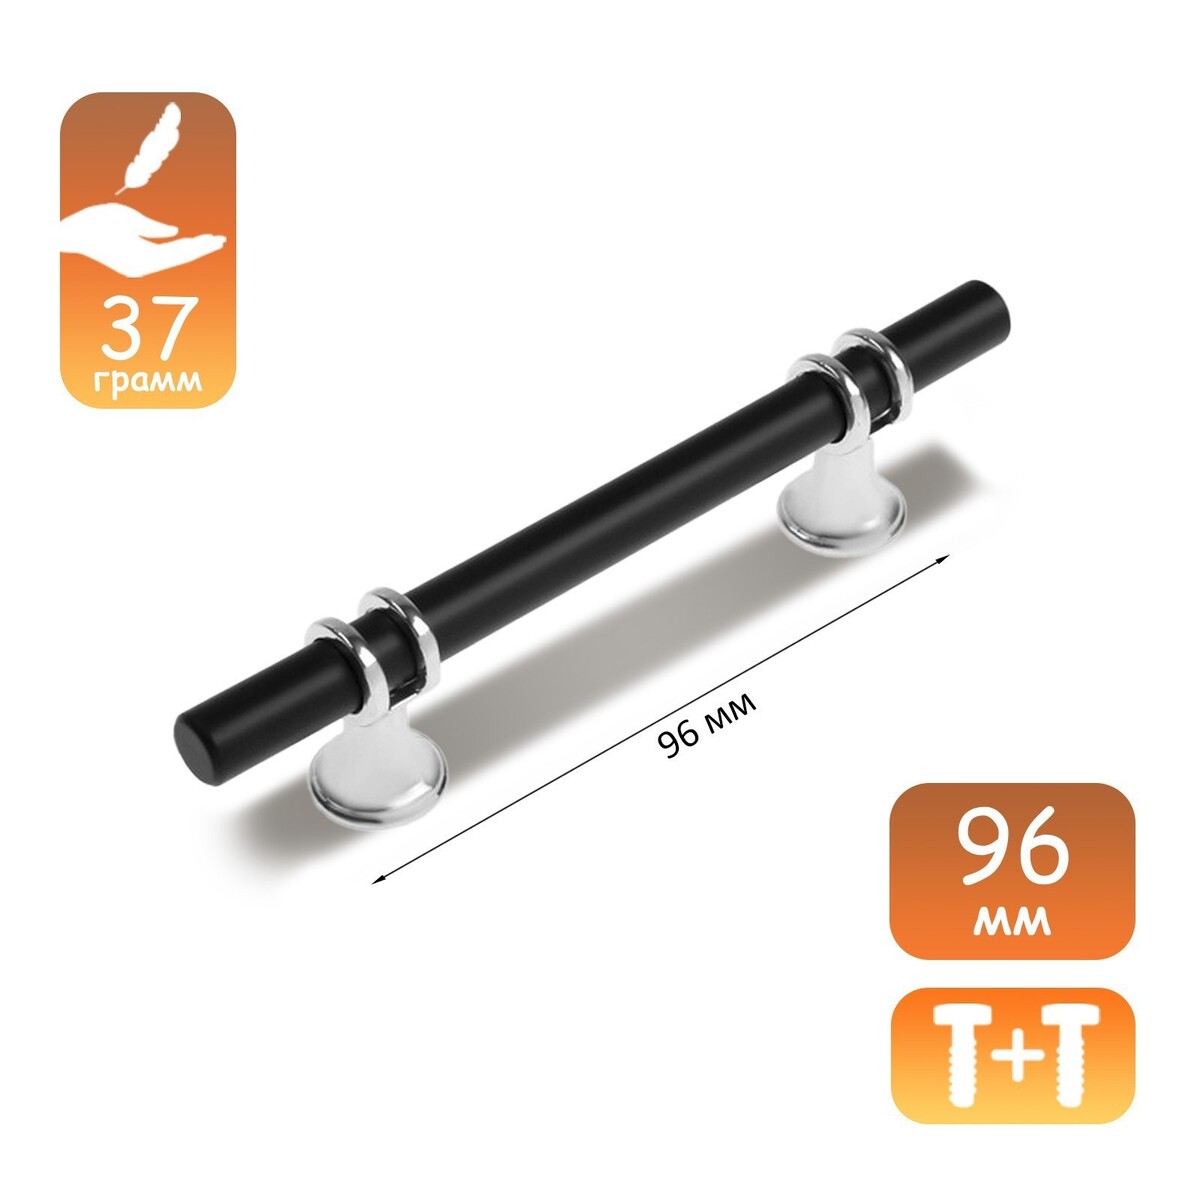 Ручка скоба cappio, м/о 96 мм, d=12 mm, пластик, цвет хром/черный ручка кнопка cappio рк019 d 20 мм пластик матовый хром